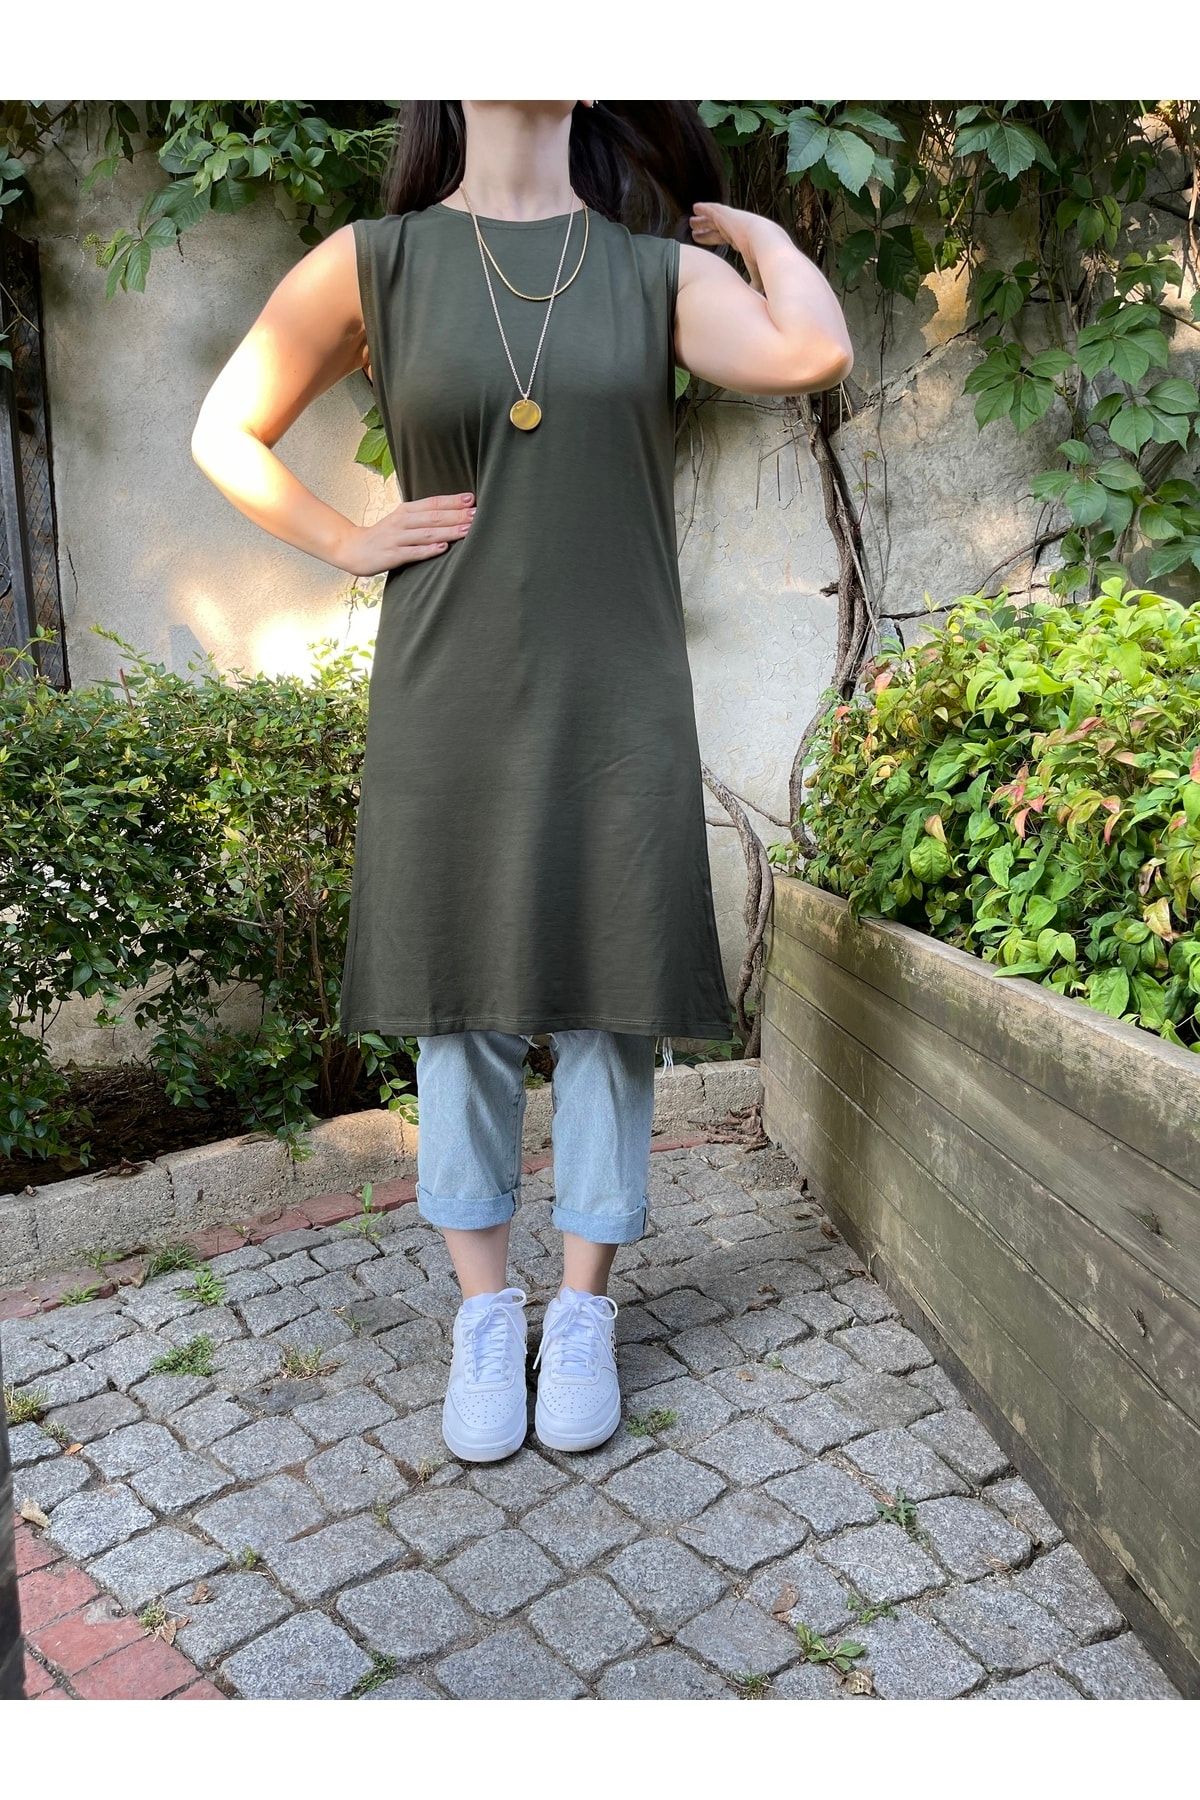 Betimoda Kadın Sıfır Kol Penye Uzun Tunik Içlik Yeşil